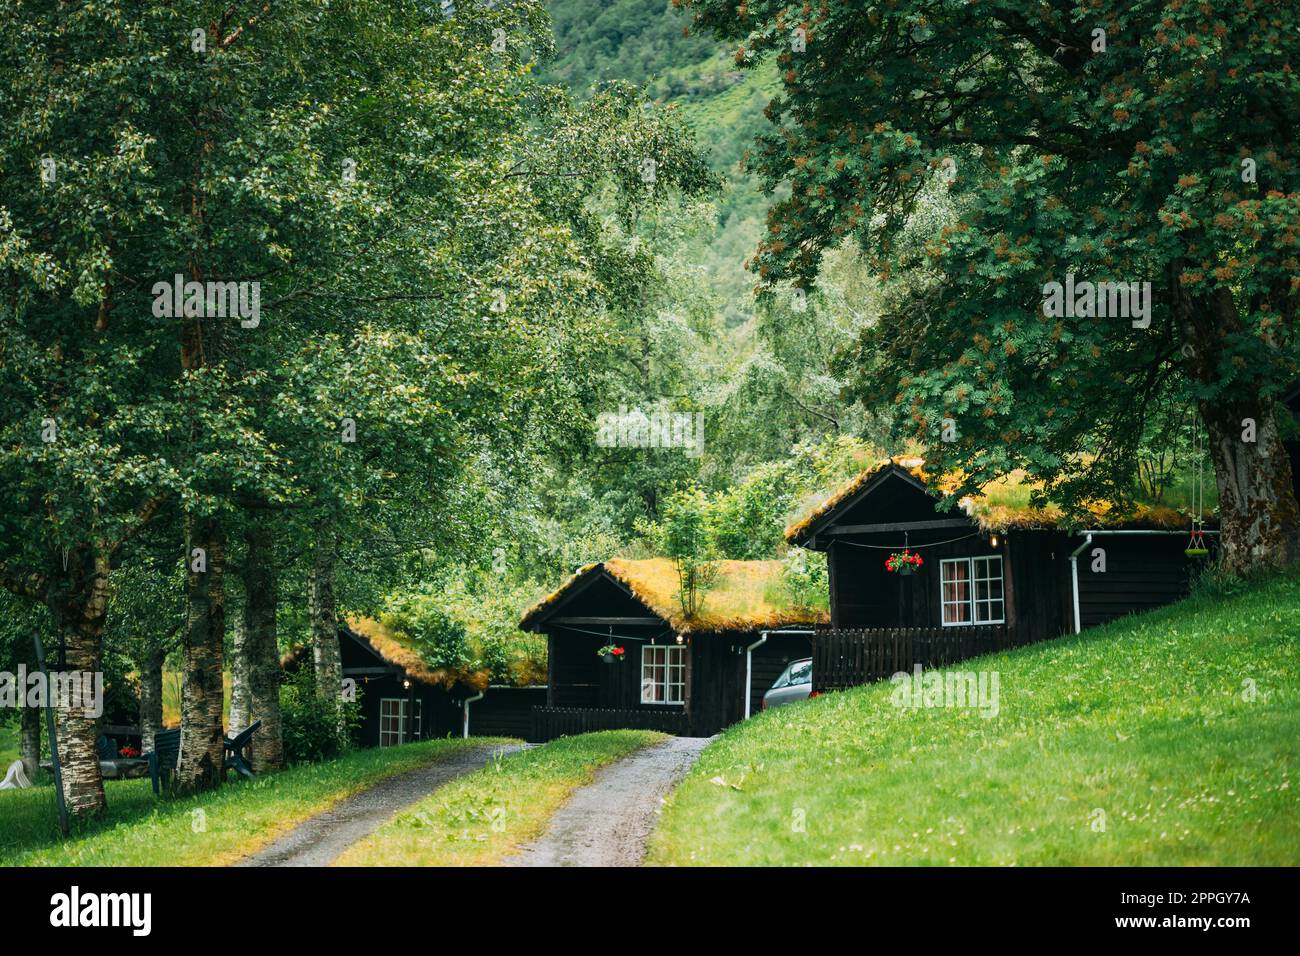 Vieilles maisons en bois norvégiennes traditionnelles avec pelouse sur le toit. Cabines en Norvège Banque D'Images